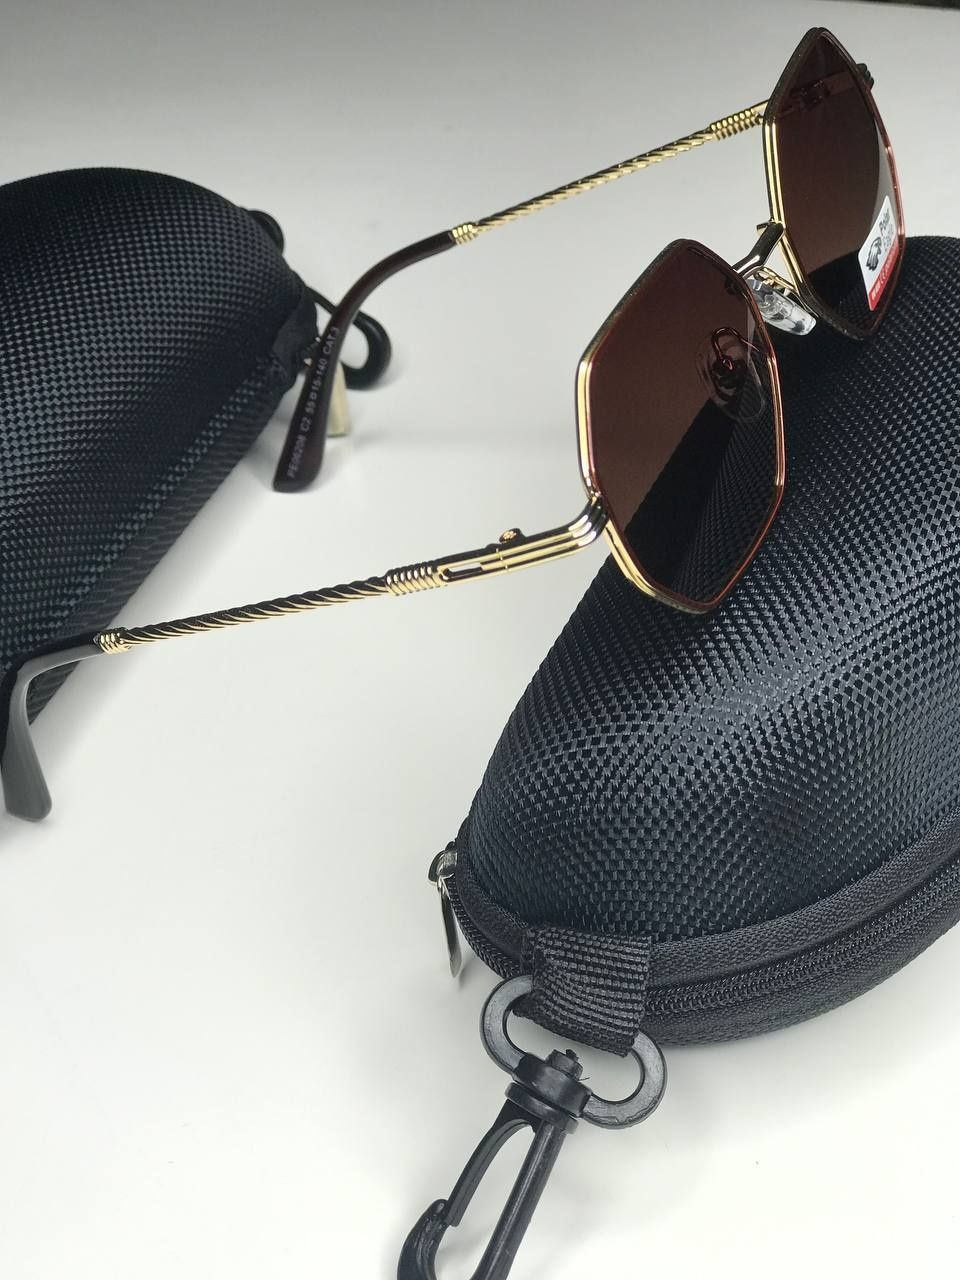 Солнцезащитные очки Octagonal бронзовые с золотой оправой Polarized